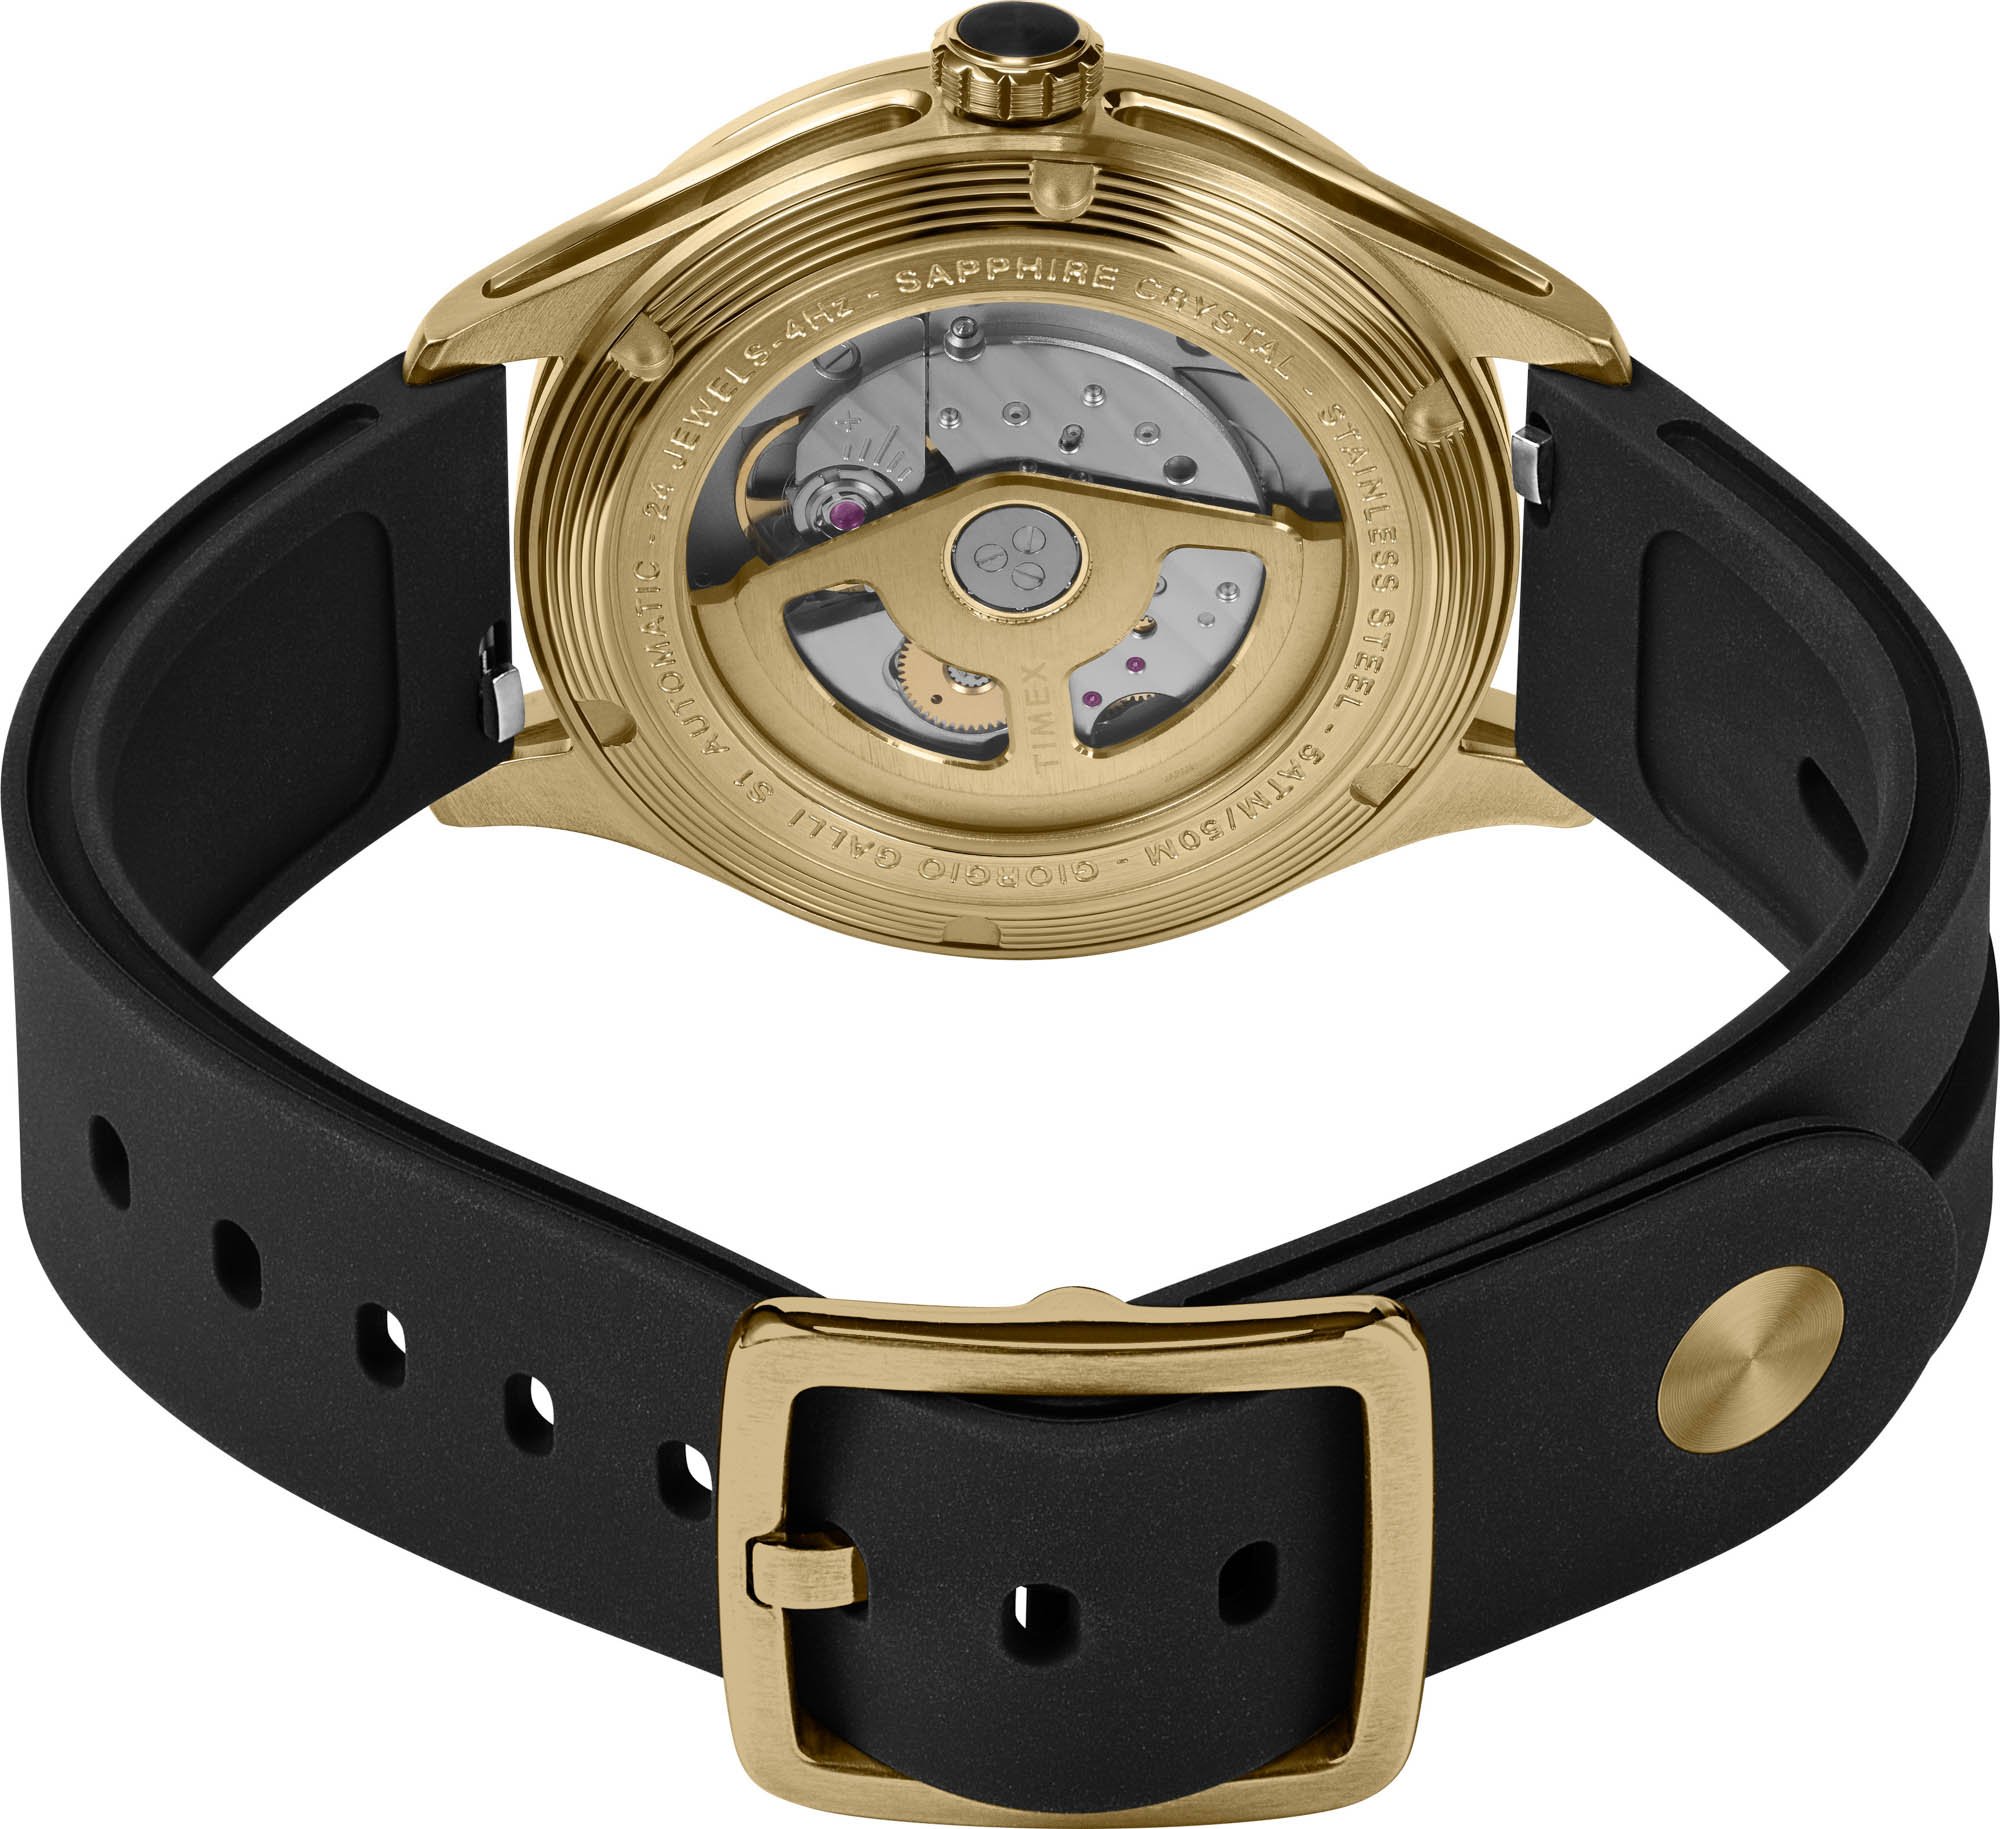 Timex представляет новые 38-миллиметровые автоматические часы Giorgio Galli S1 в черном и золотом исполнении